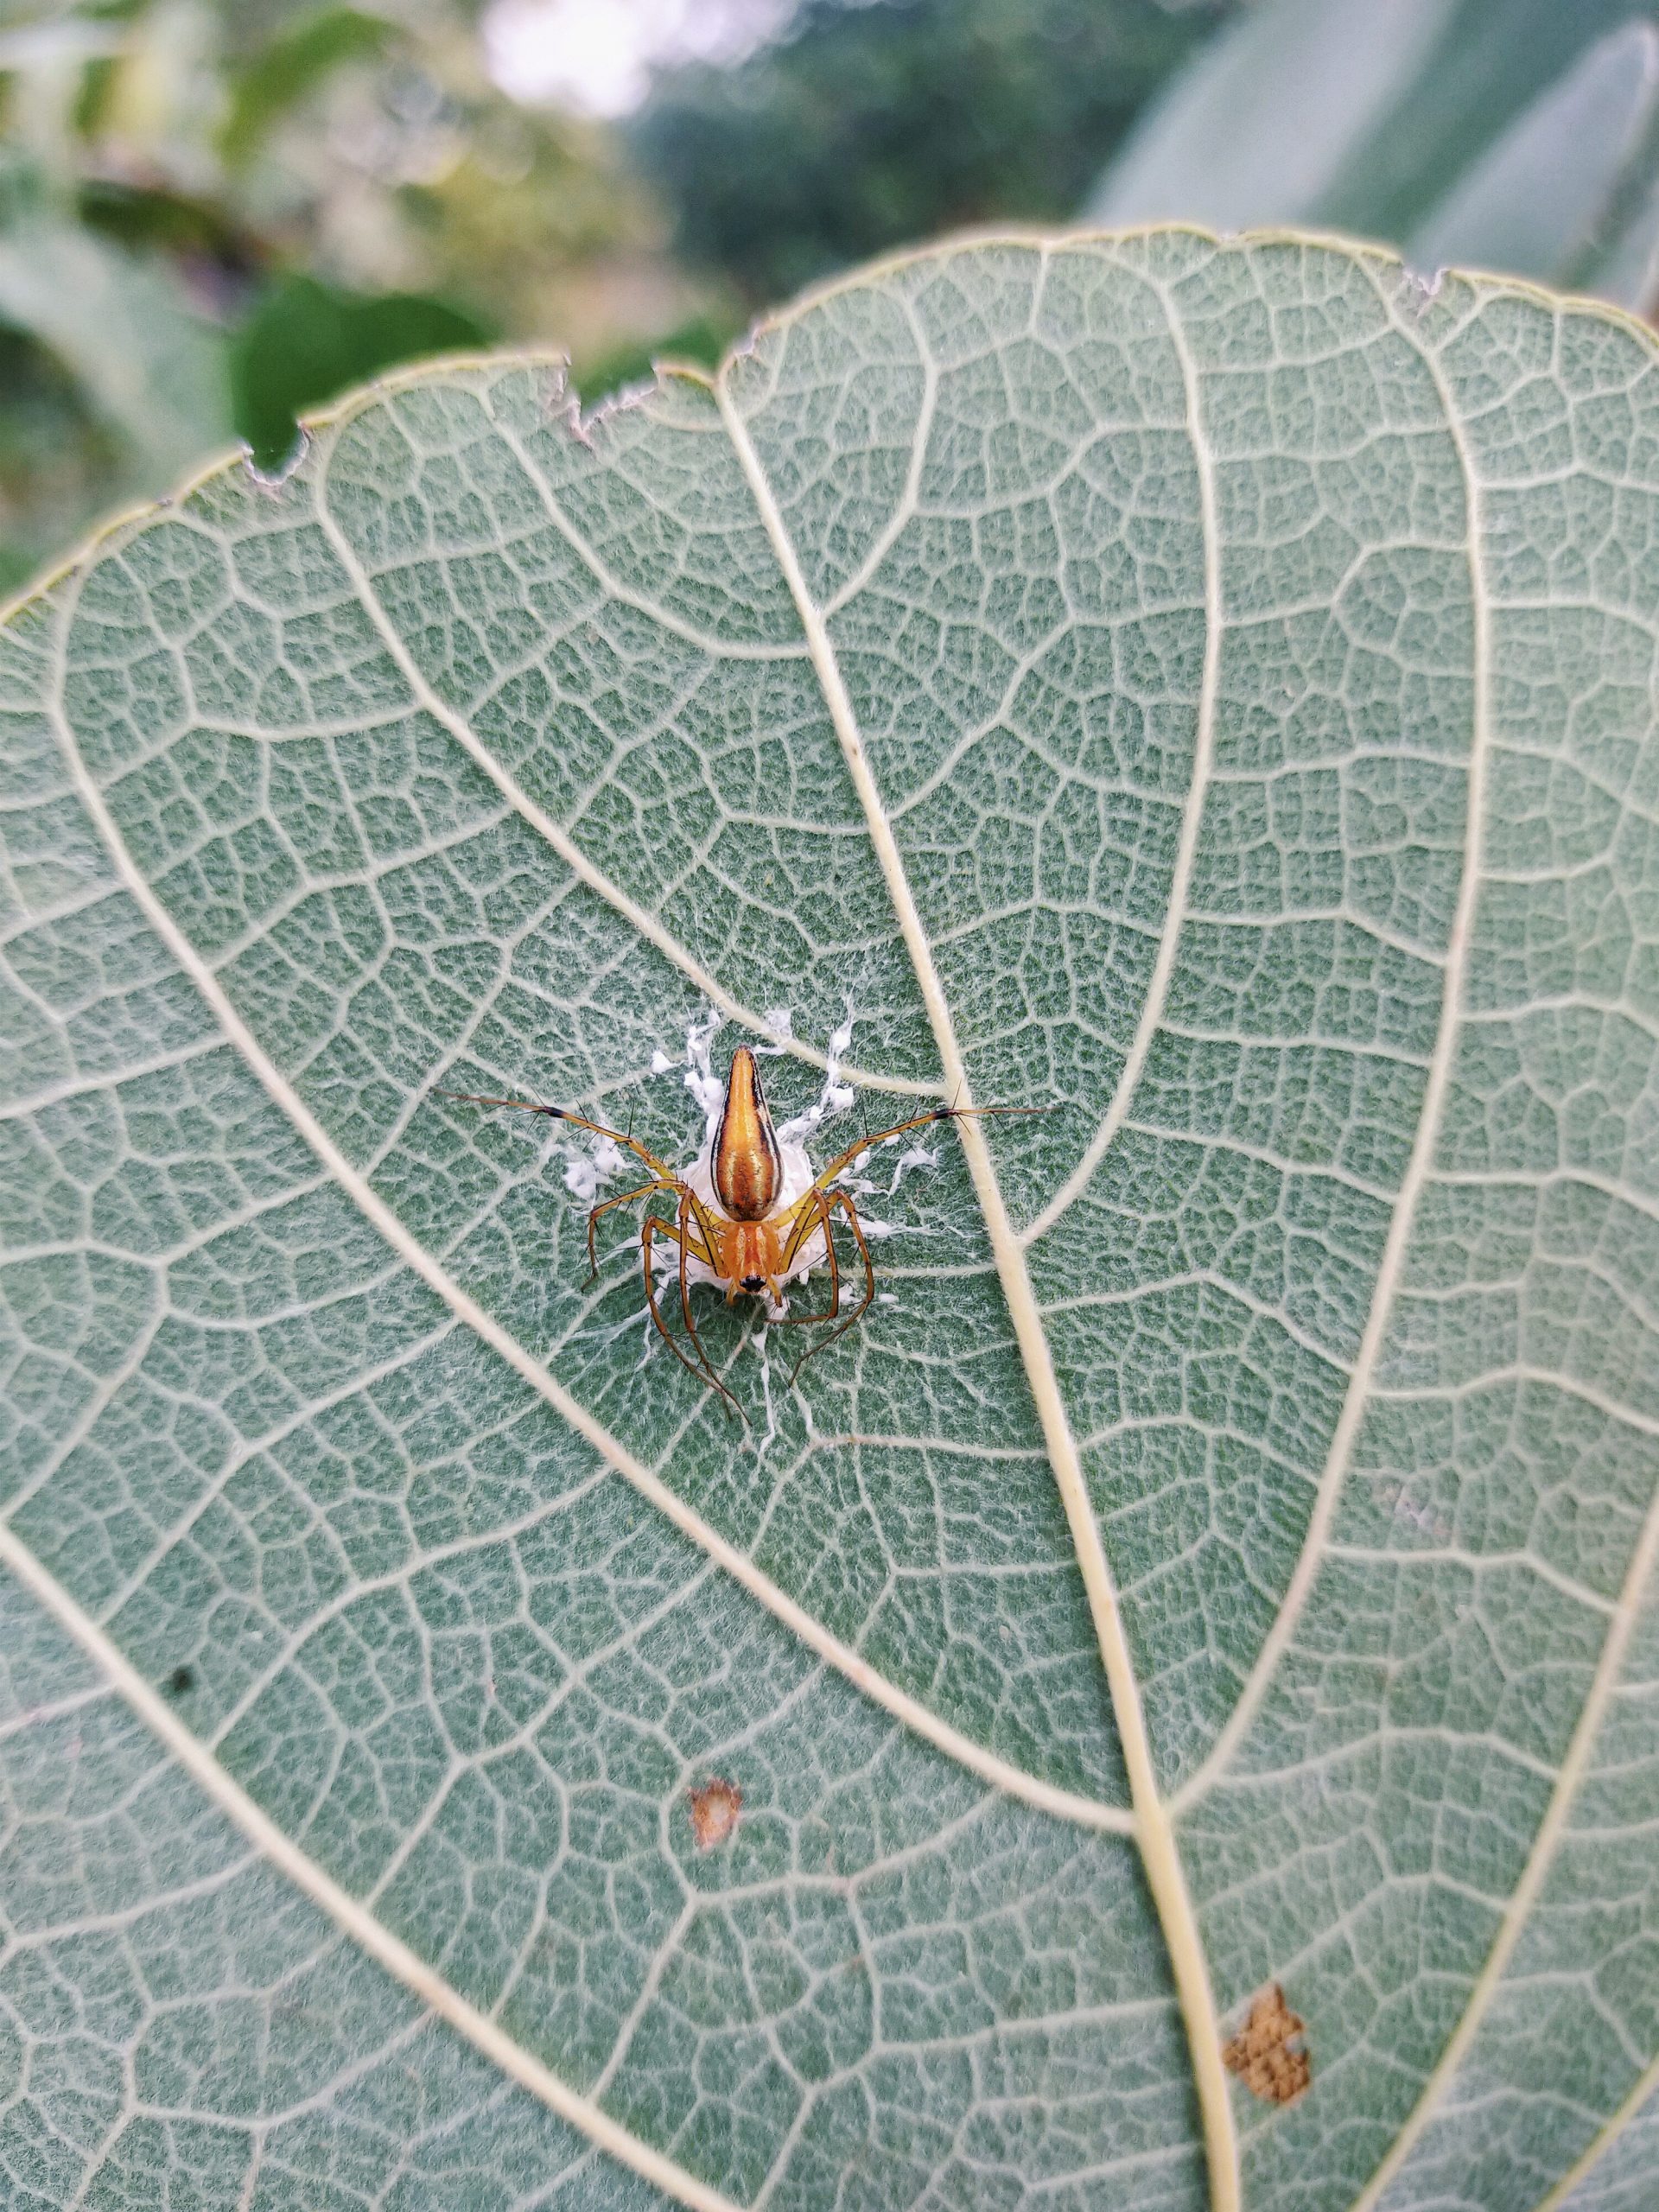 Spider on leaf